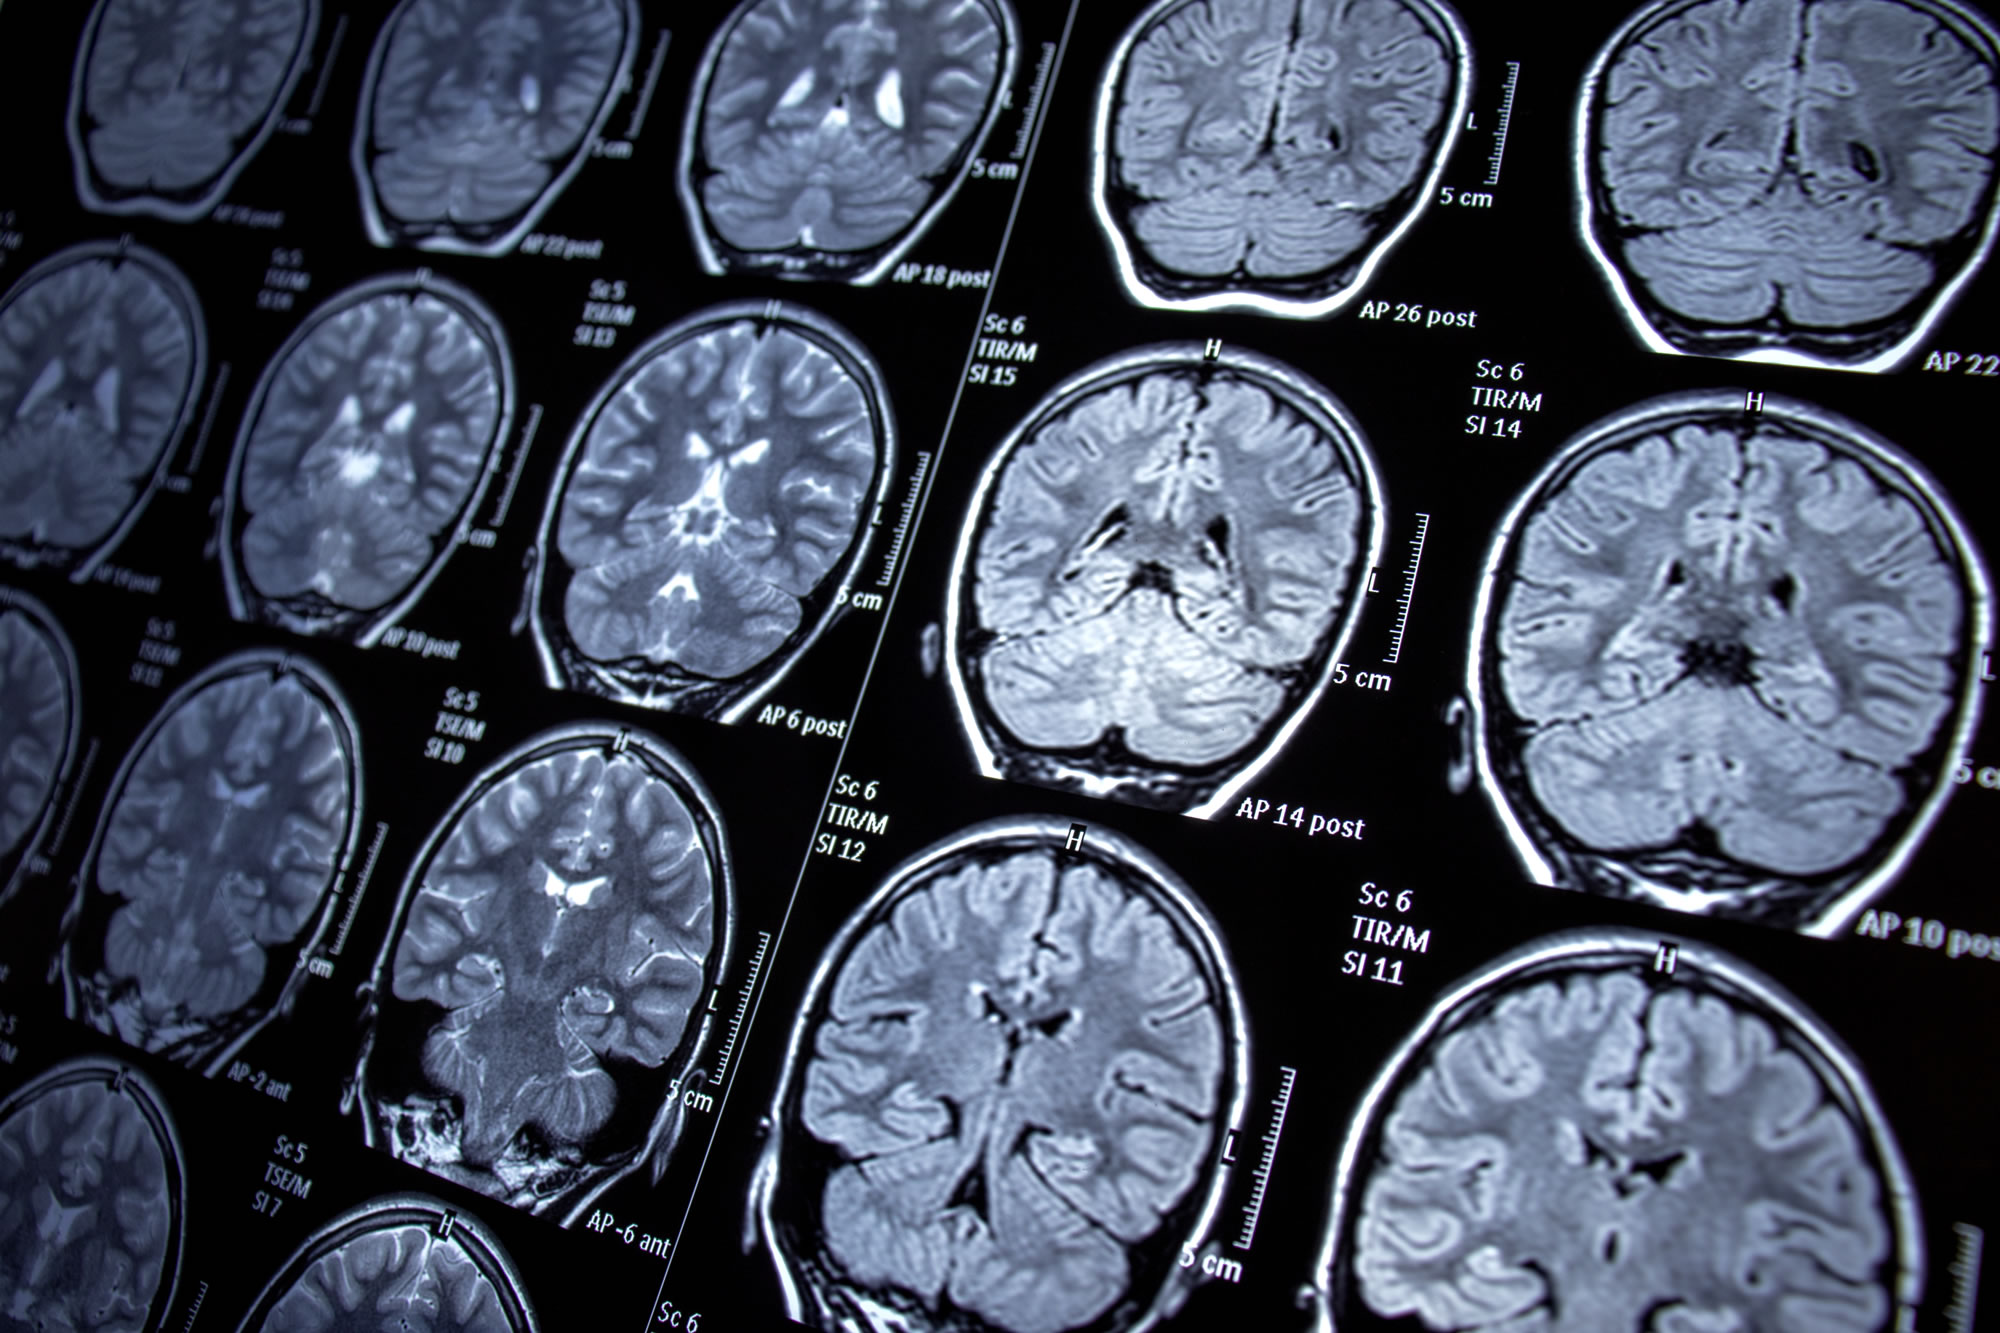 brain-scanning-technique-detecting-concussions